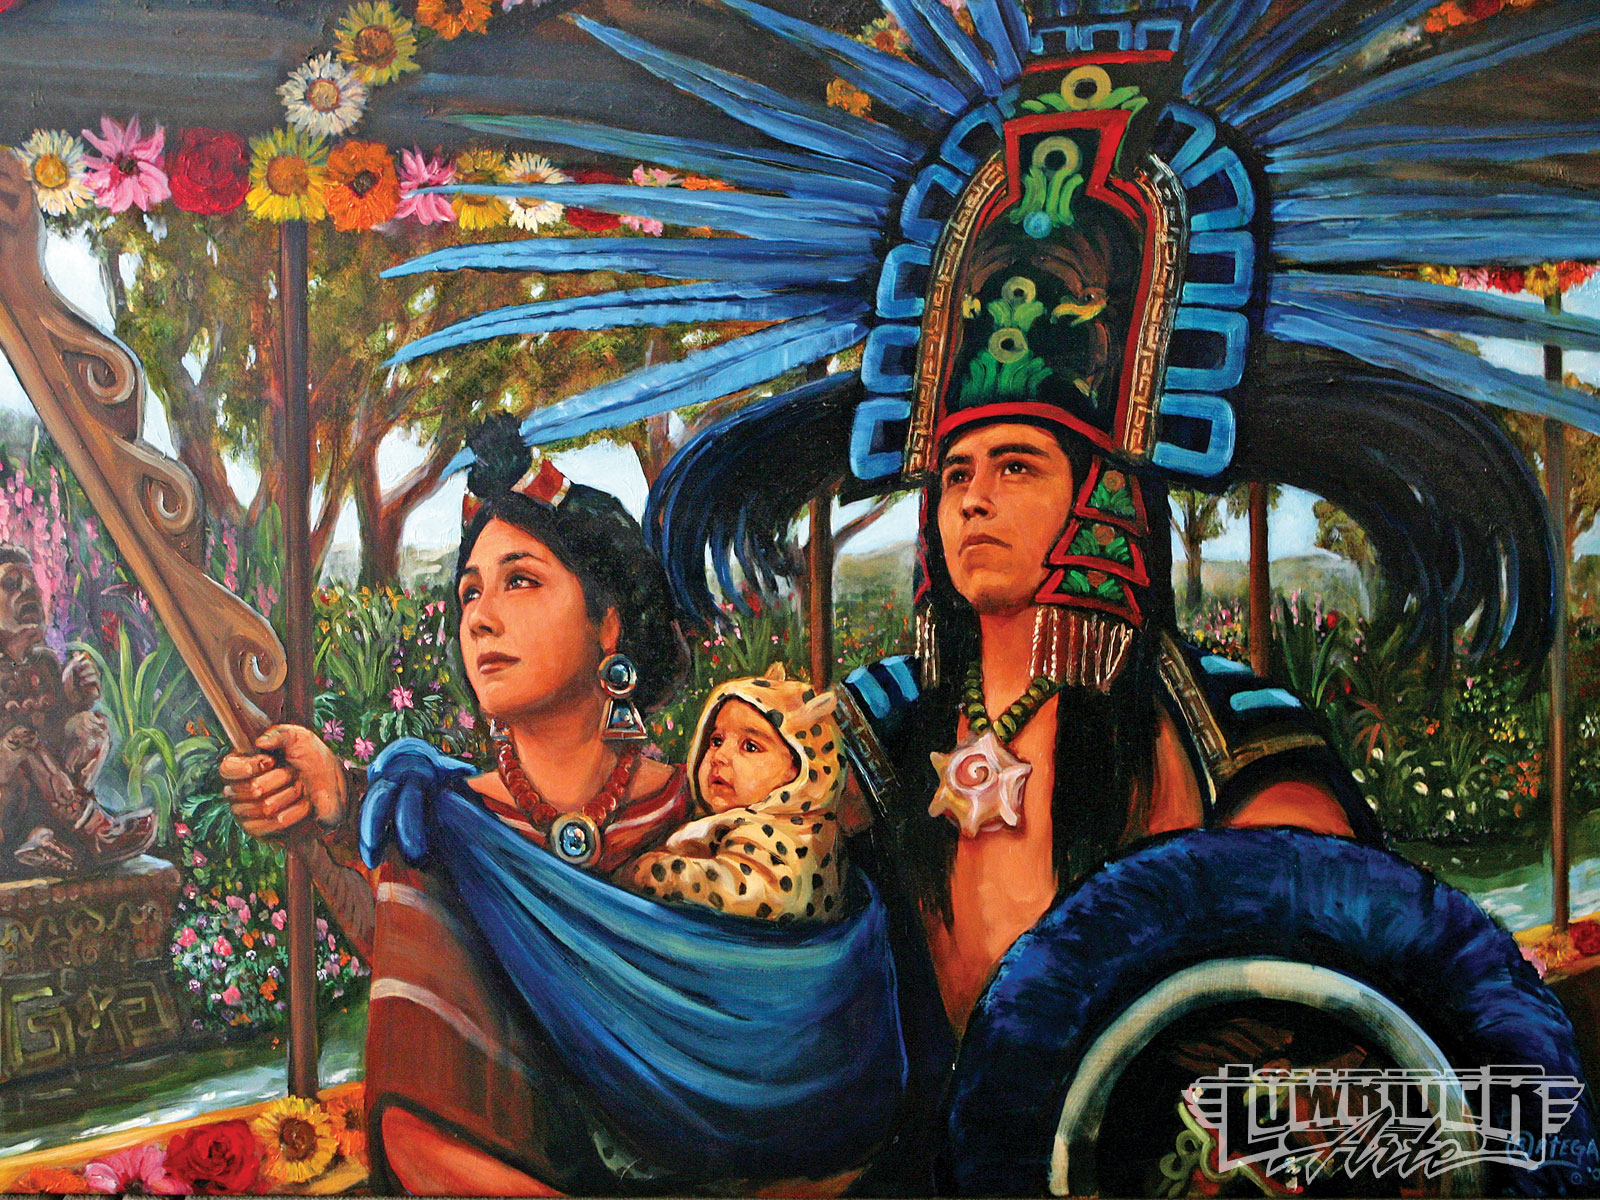 547228 descargar imagen artístico, cultura, azteca: fondos de pantalla y protectores de pantalla gratis